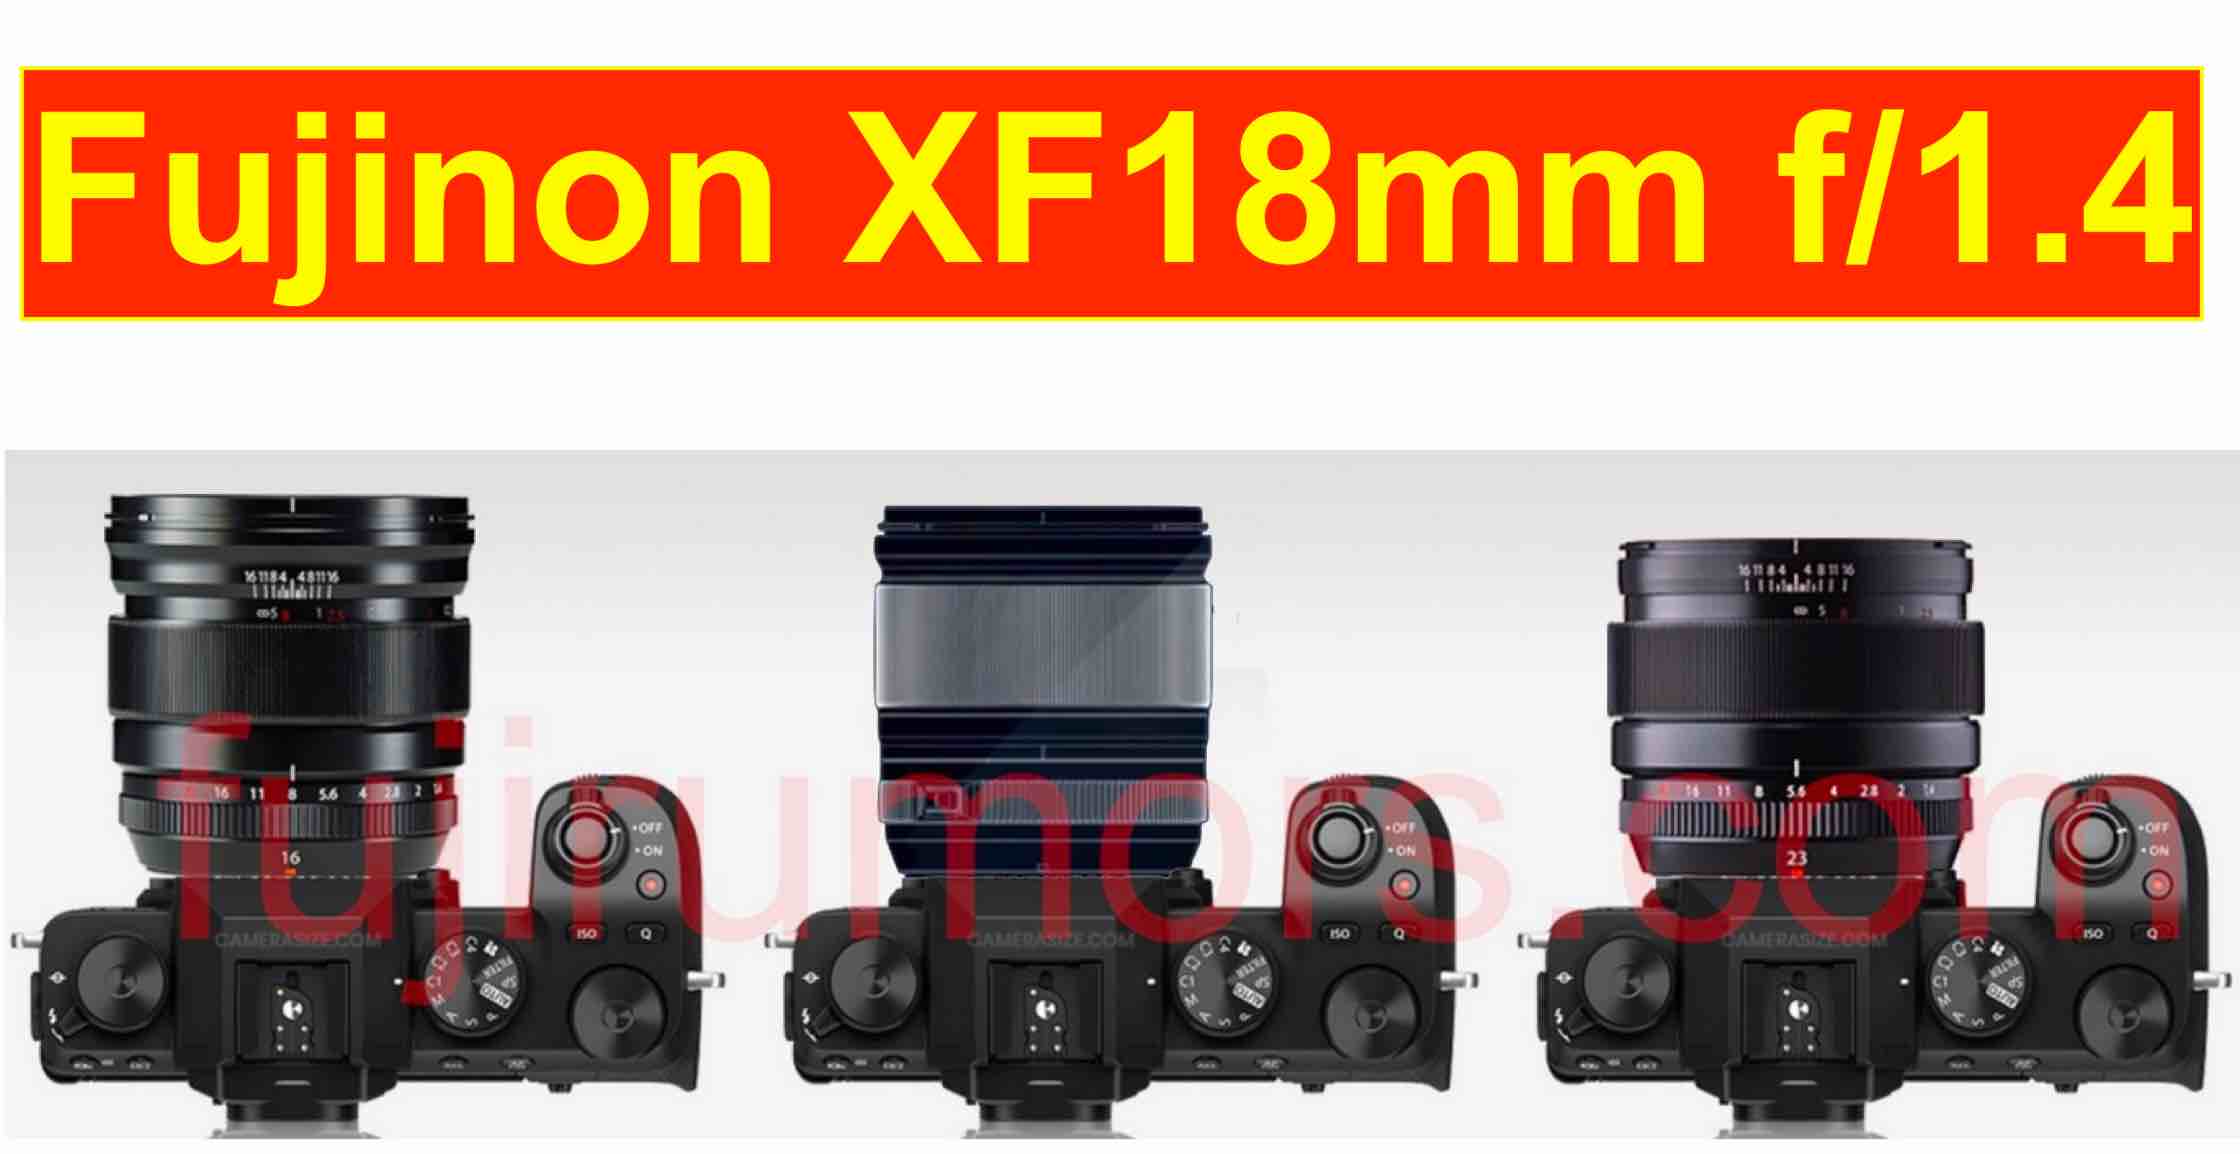 Fujinon XF 18mm f/1.4 Archives - Fuji Rumors